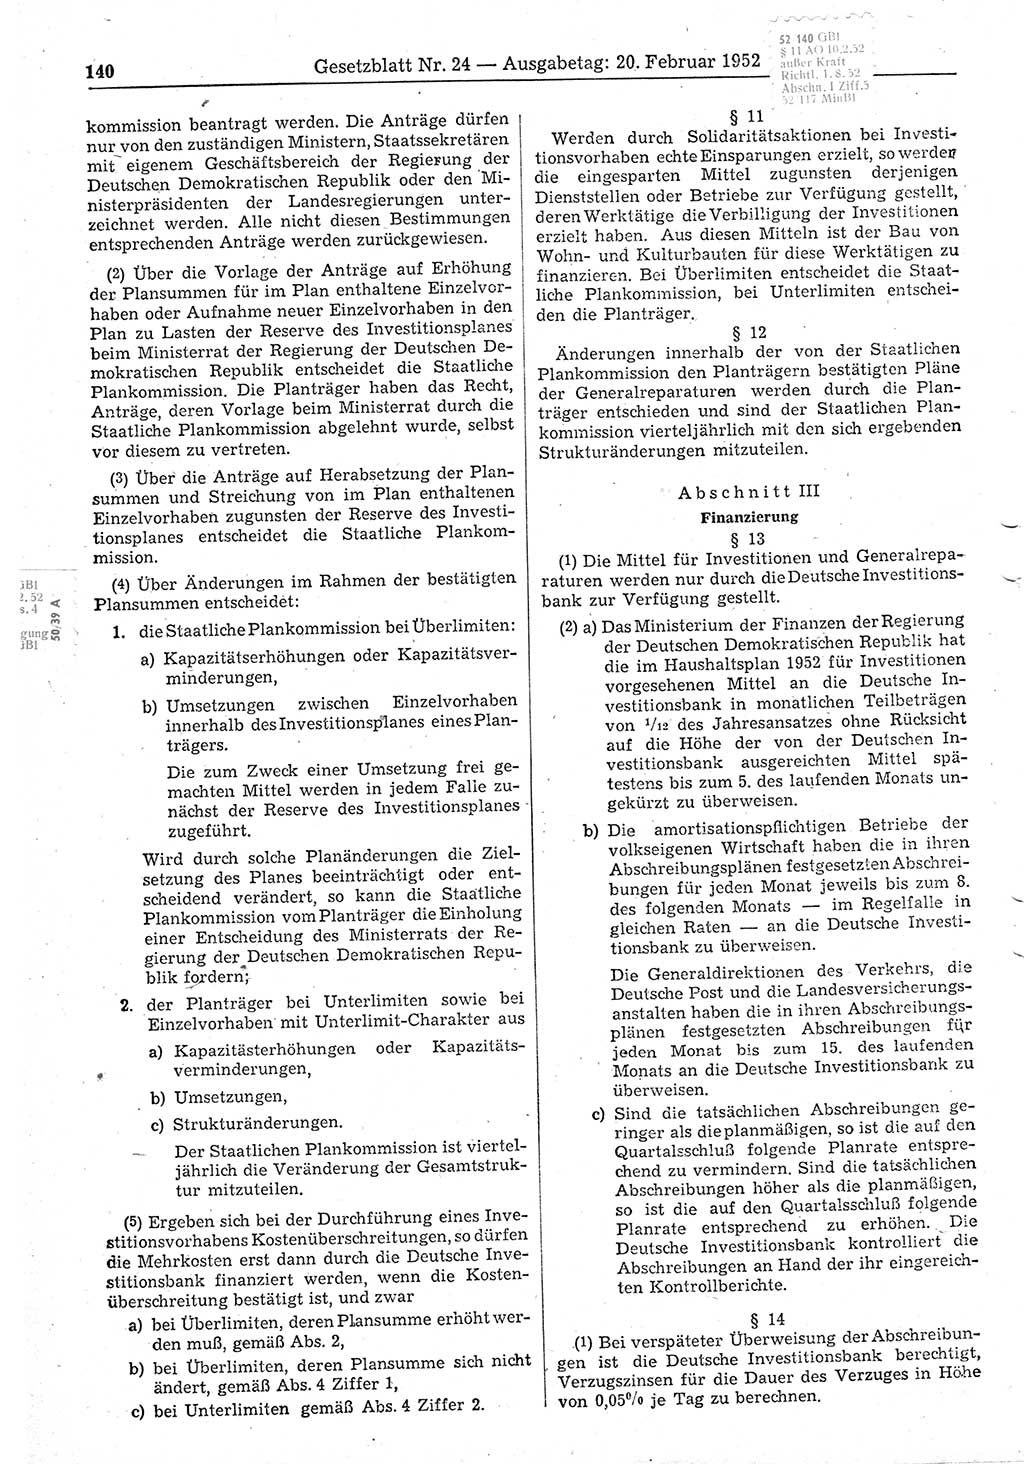 Gesetzblatt (GBl.) der Deutschen Demokratischen Republik (DDR) 1952, Seite 140 (GBl. DDR 1952, S. 140)